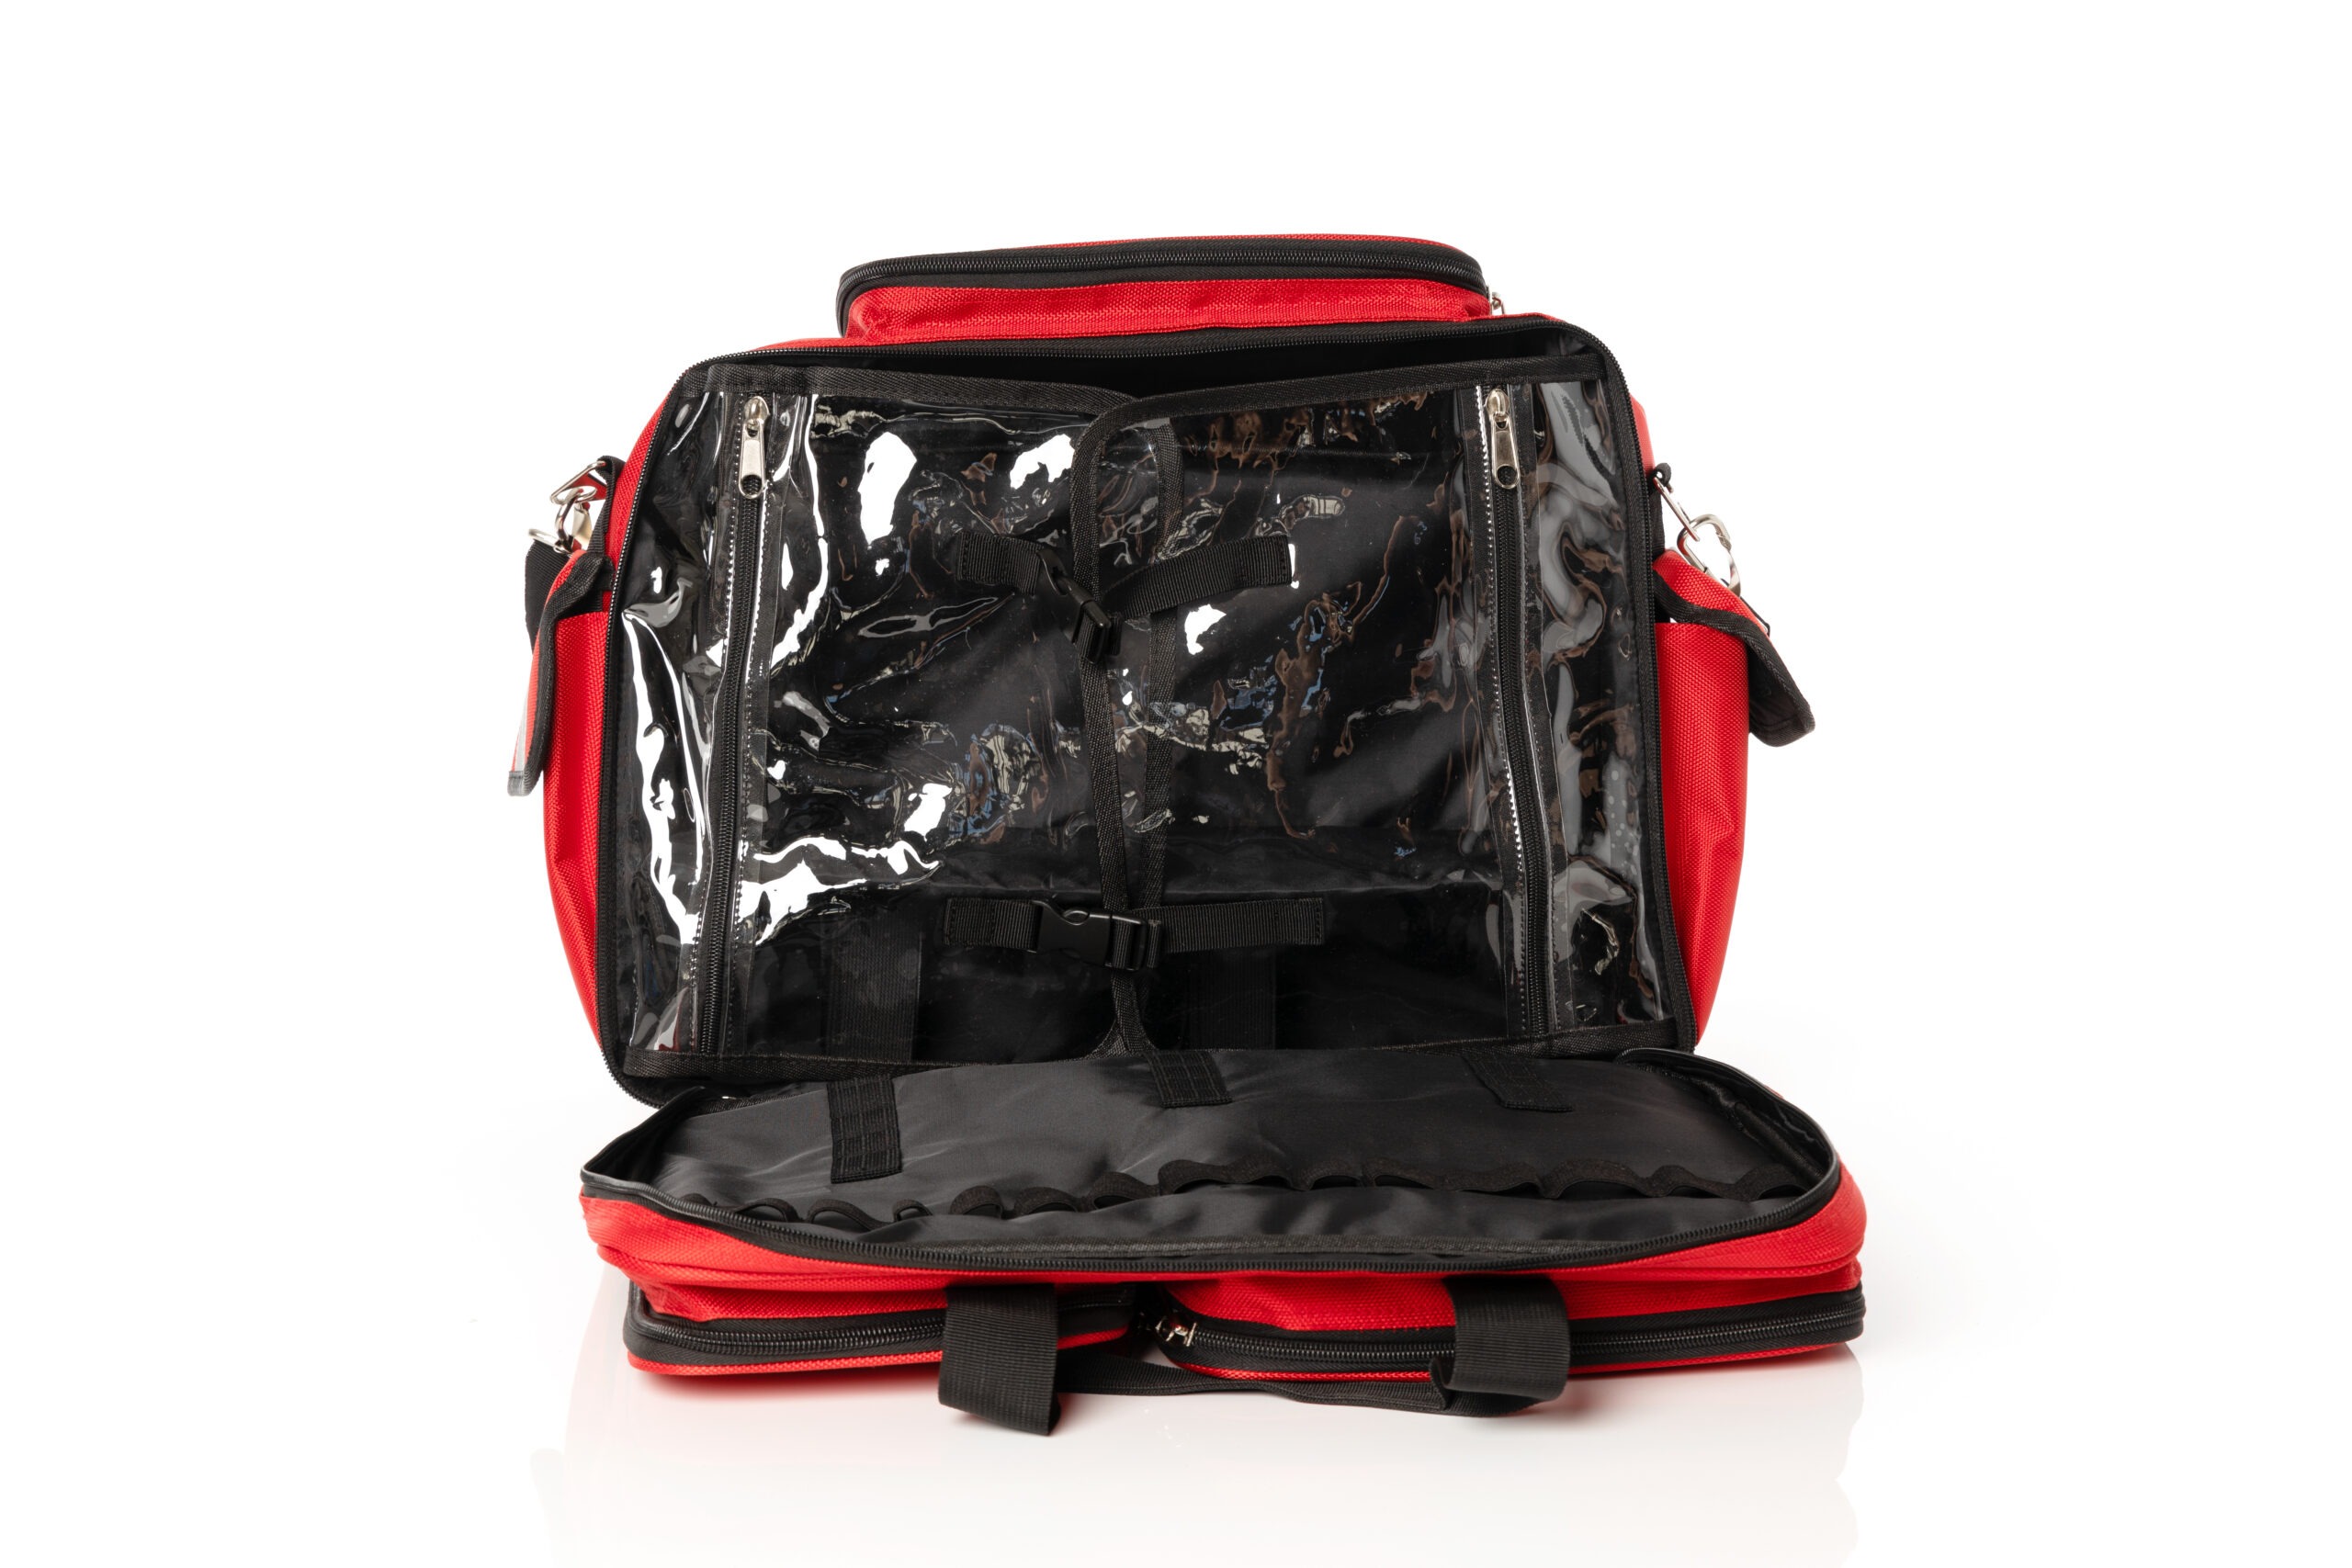 Elitebags Heal & Go Erste-Hilfe-Tasche im DIN A4 Format